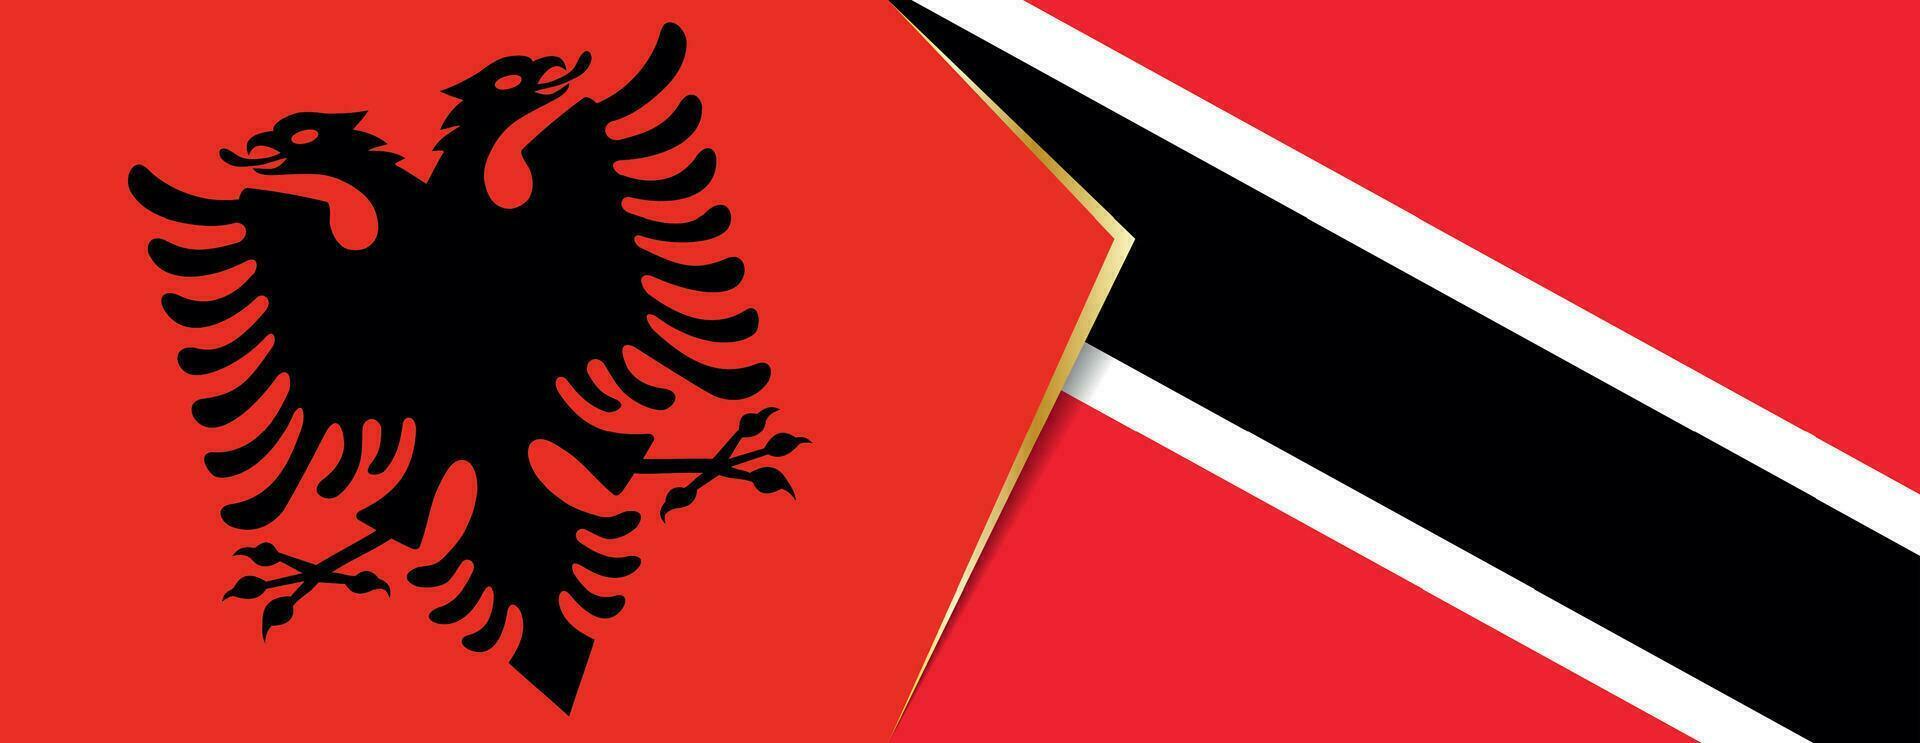 Albania e trinidad e tobago bandiere, Due vettore bandiere.